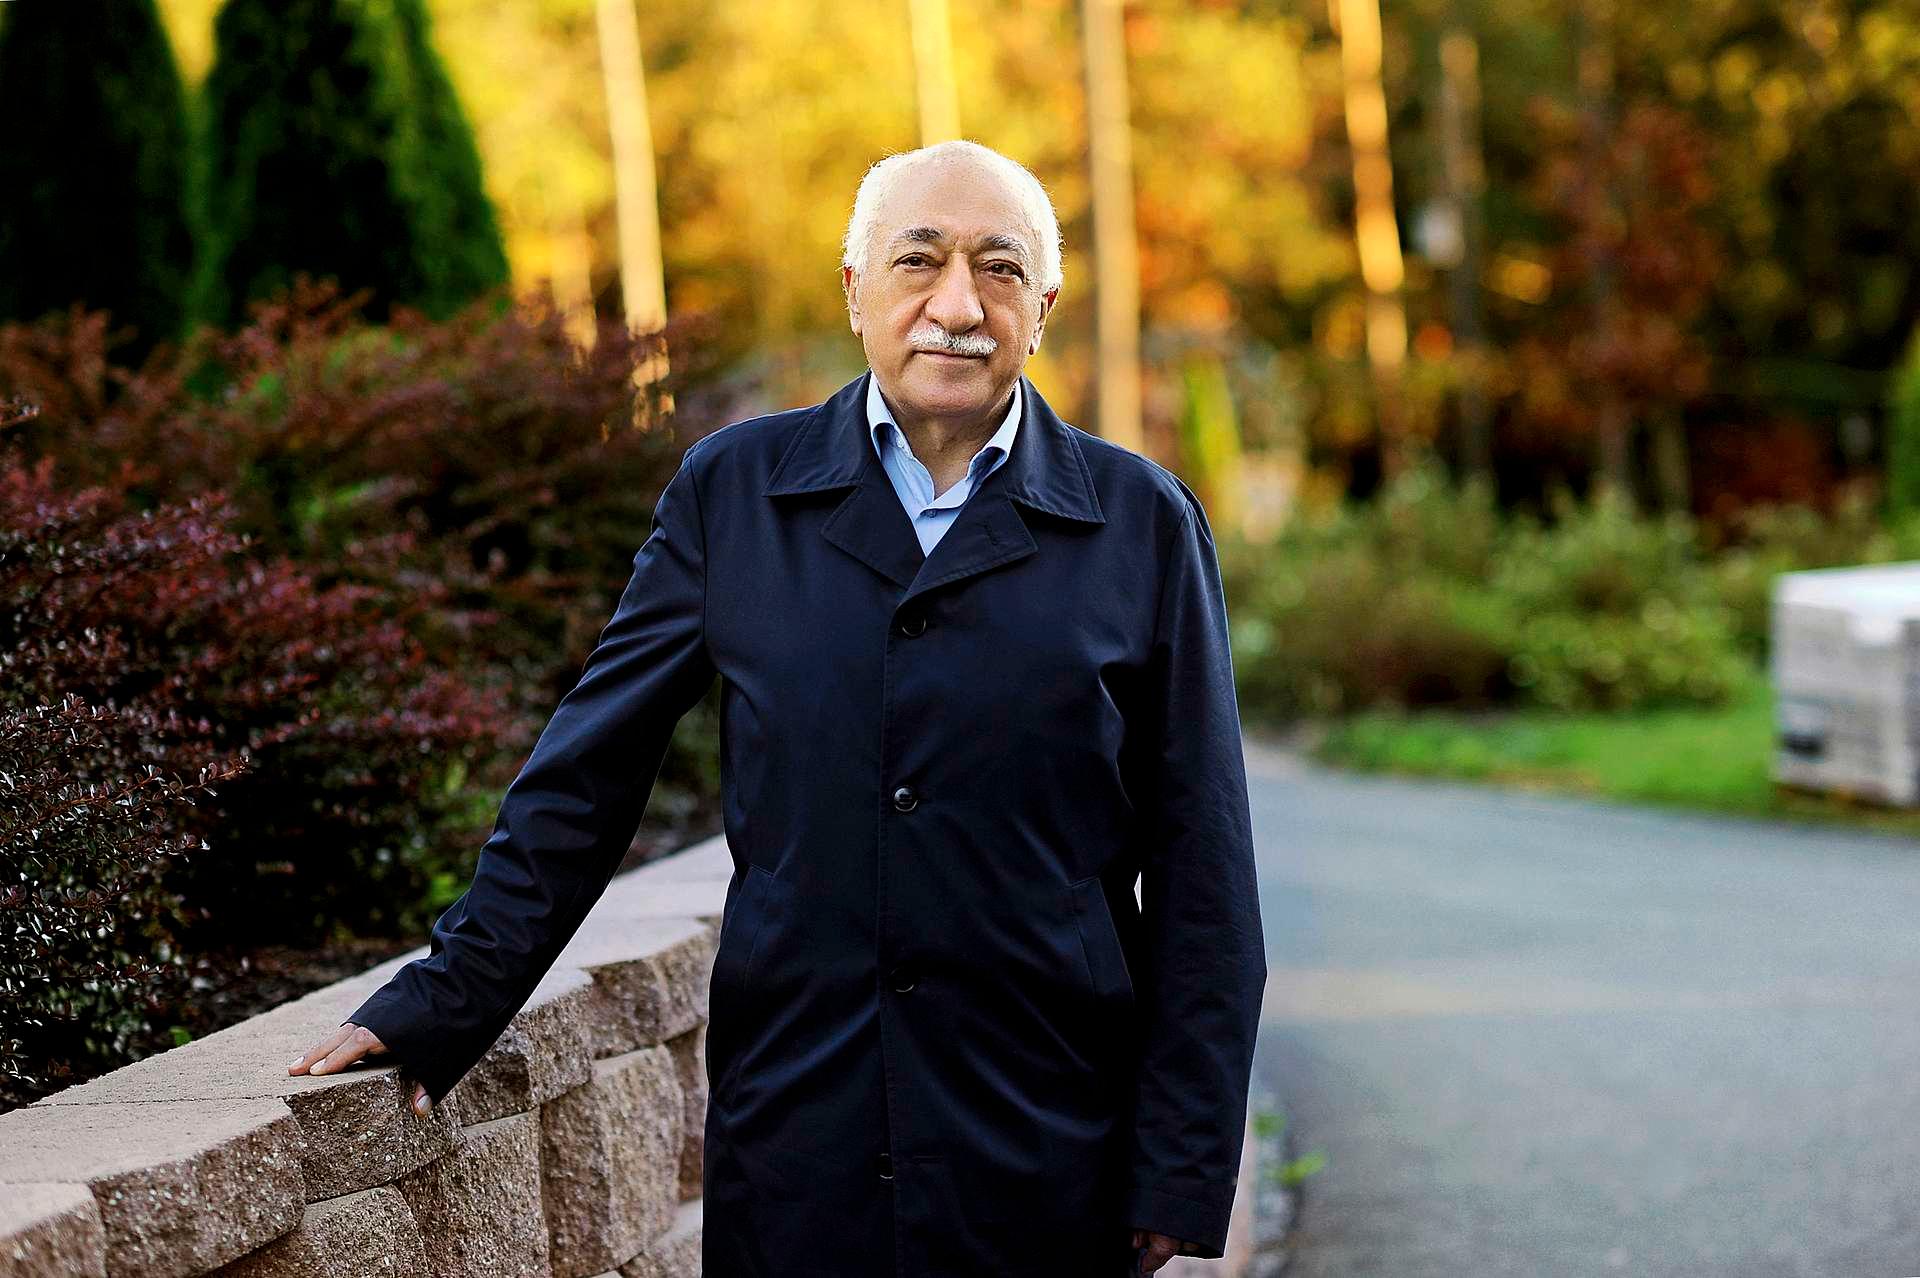 Fethullah Gülen er opprinnelig fra Erzurum i Tyrkia, men har bodd i USA siden 1999. Myndighetene i Tyrkia anklager ham for å ha stått bak kuppforsøket i 2016. Han benekter at han hadde noe med det å gjøre.